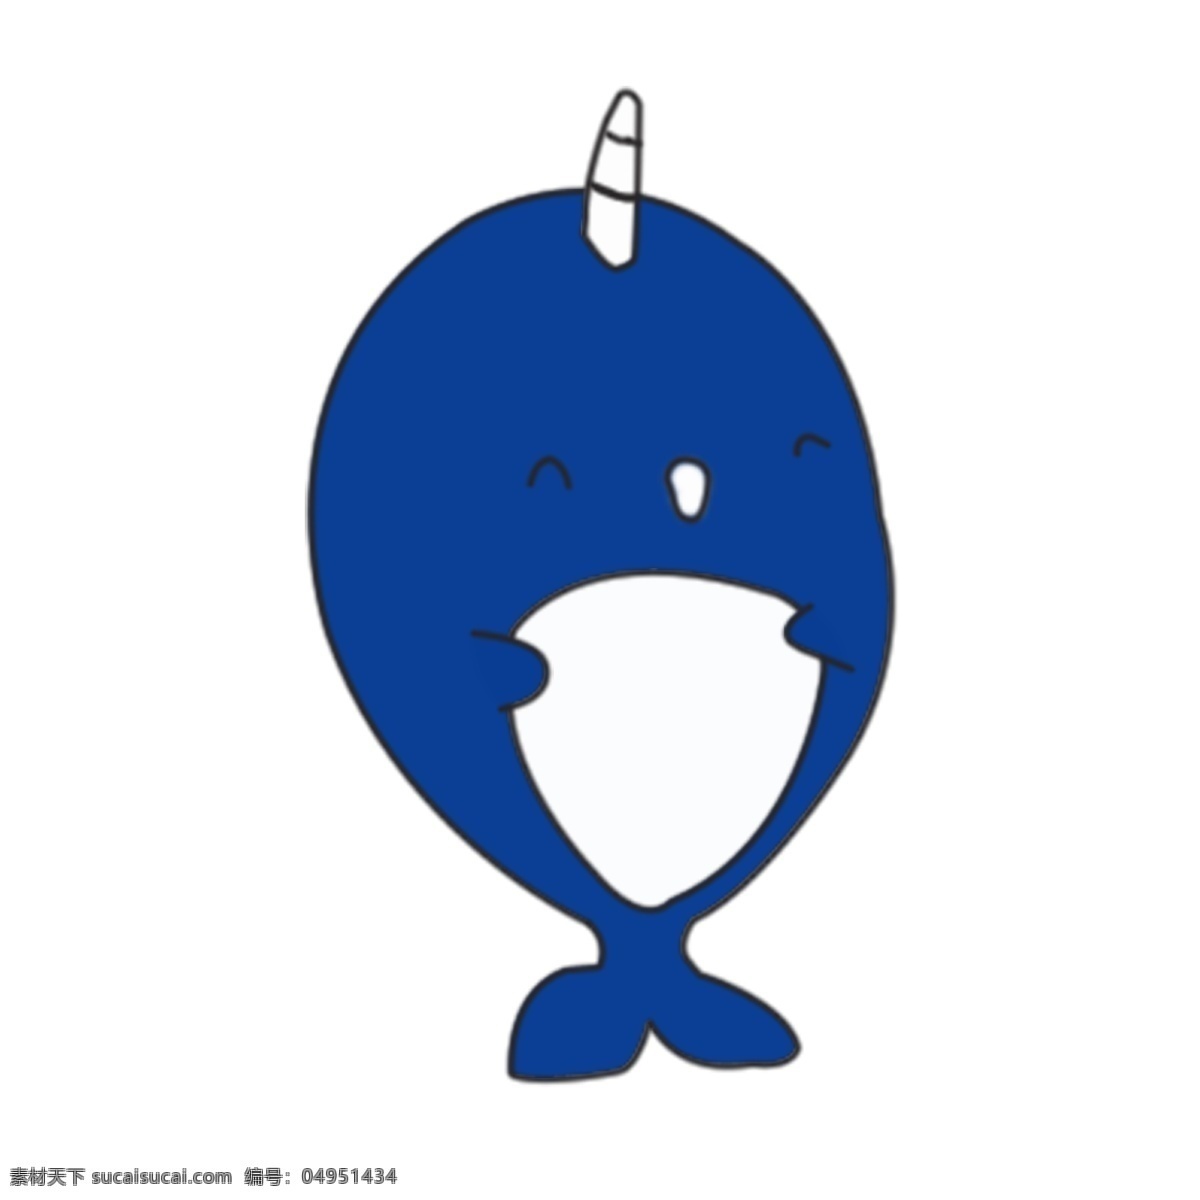 卡通 可爱 小 动物 海豹 动物可爱 萌 哒 卡通动物 动物插画